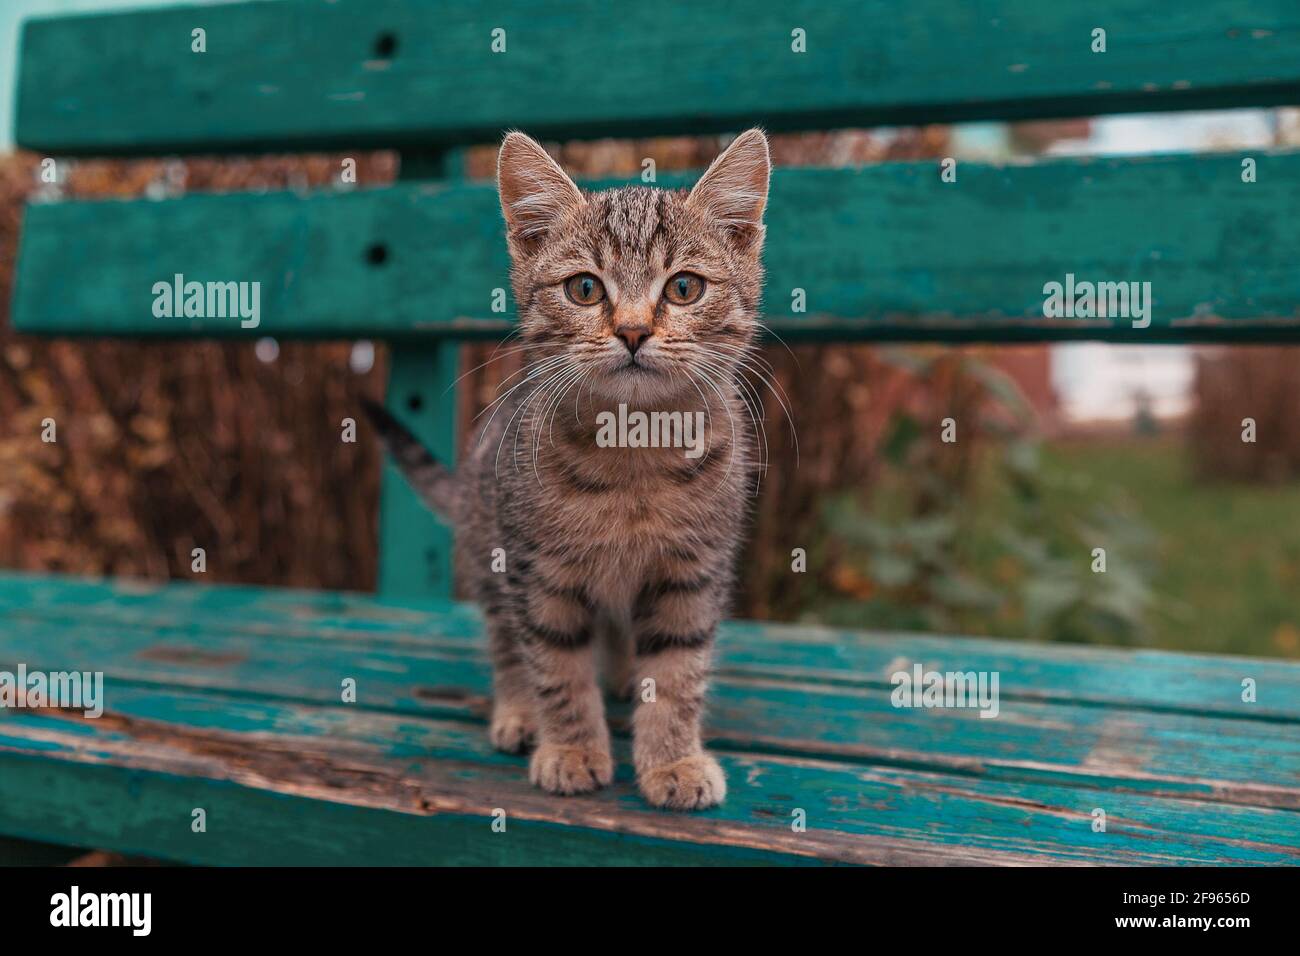 Ein kleines gestromte Kätzchen steht auf einer alten Bank. Geringe Schärfentiefe. Stockfoto